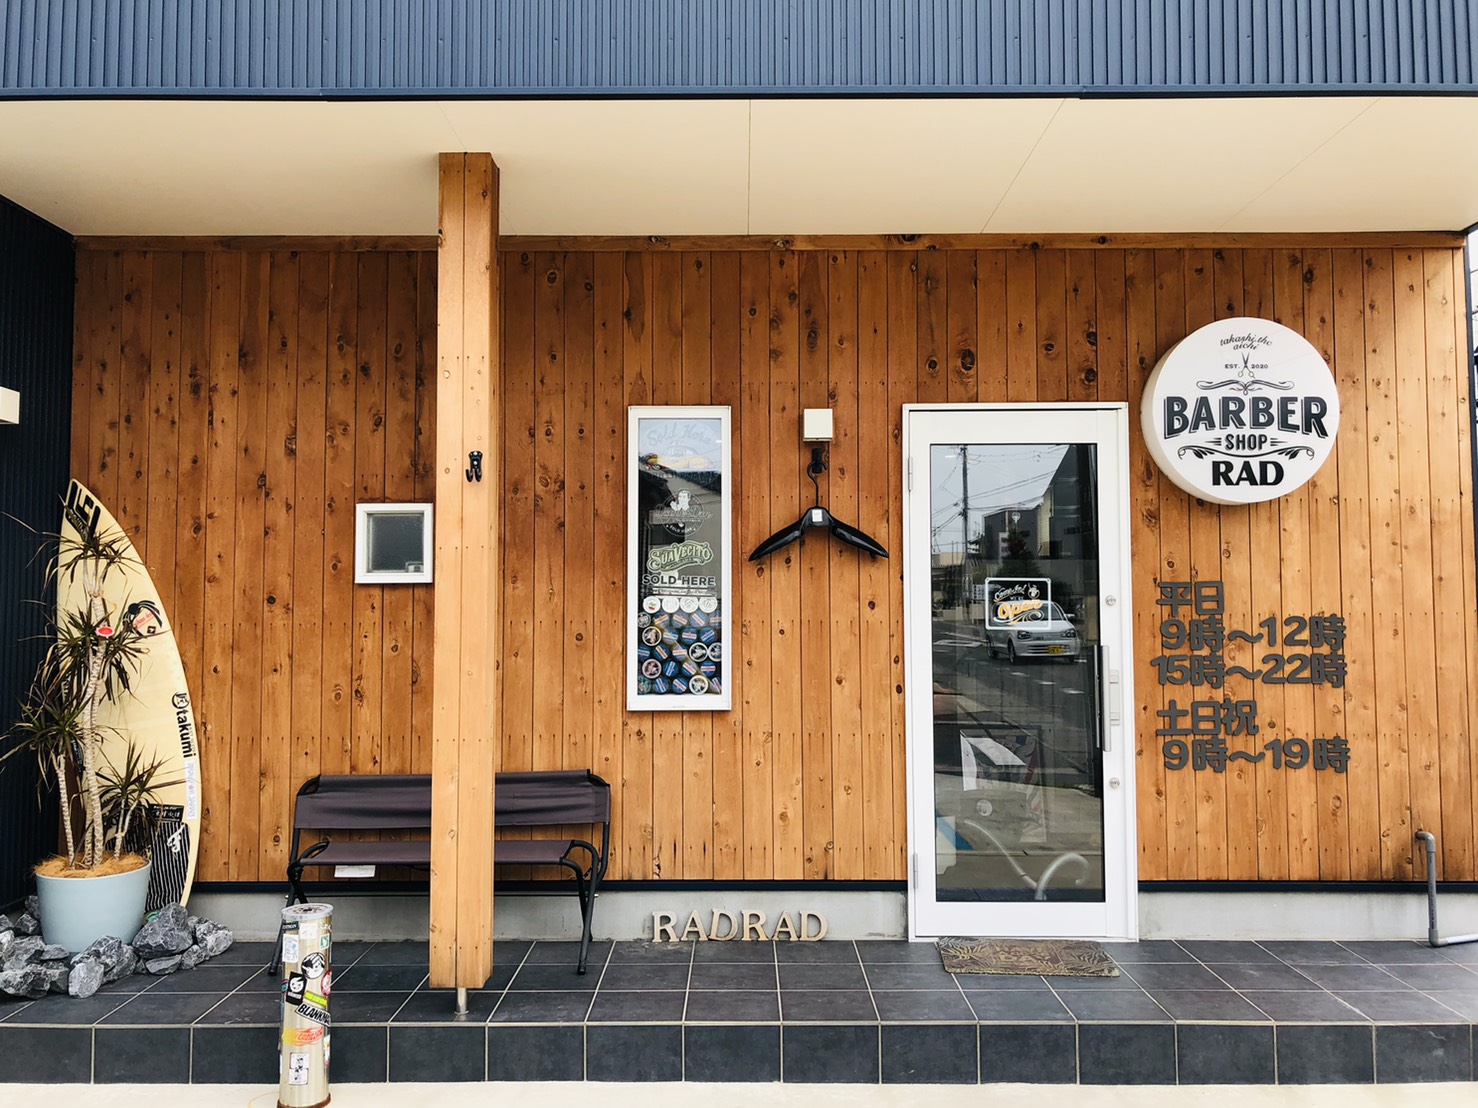 豊橋市の理容室『Barber shop RAD』様の店内丸ごと抗菌・抗ウイルスコーティング『エコキメラ』を施工いたしました。